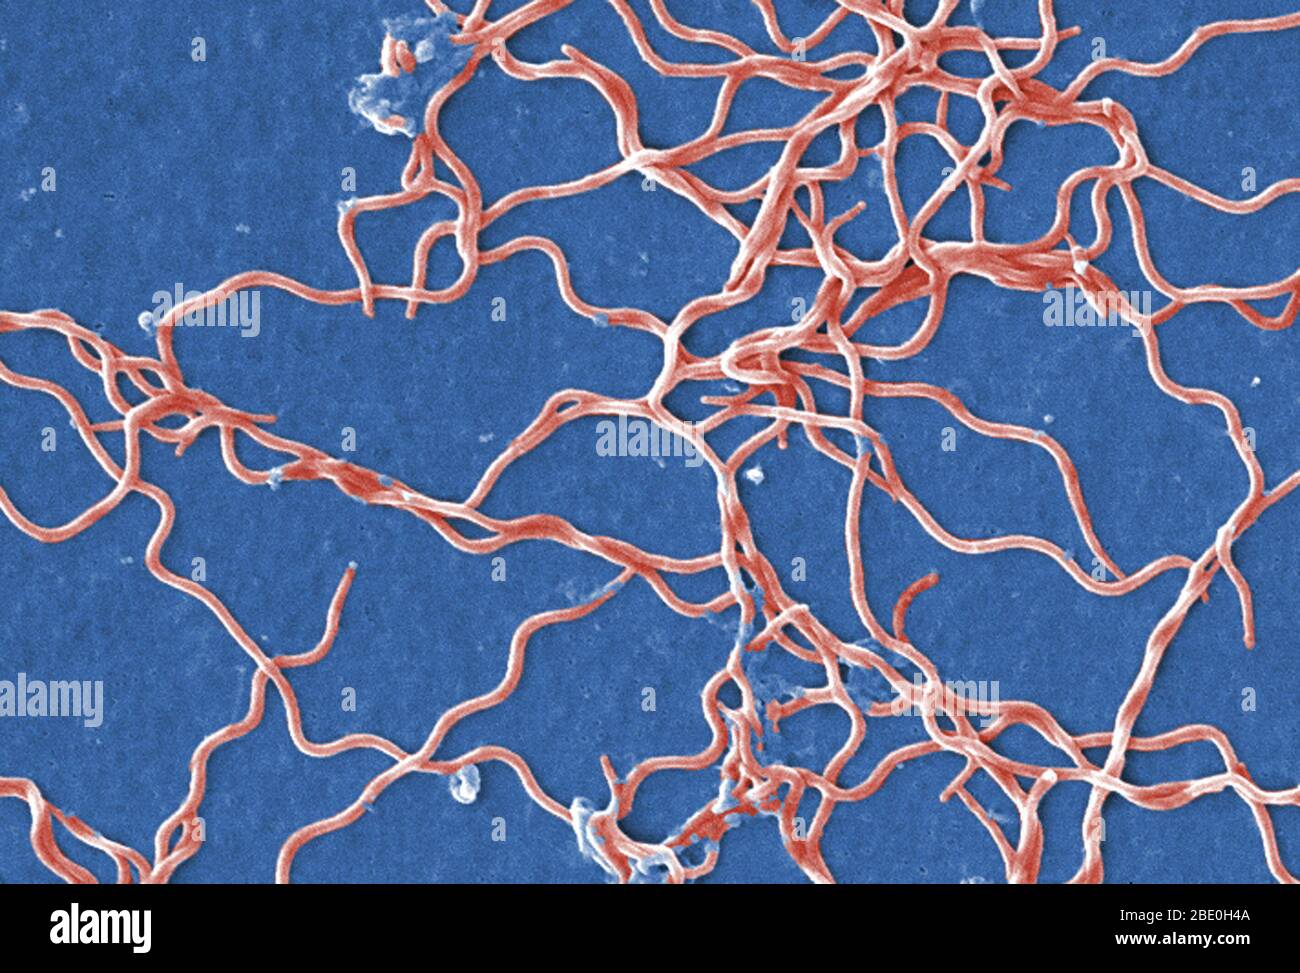 La micrografia elettronica a scansione (SEM) descrive un raggruppamento di numerosi batteri Borrelia burgdorferi, anaerobici, Gram-negativi, che erano stati derivati da una coltura pura. Questo organismo patogeno è responsabile della malattia di Lyme, un disturbo zoonotico, veicolato da vettori, trasmesso all'uomo tramite un morso di zecca. B. burgdorferi appartiene ad un gruppo di batteri chiamati spirochete, il cui aspetto assomiglia ad una molla a spirale. B. i batteri burgdorferi possono infettare diverse parti del corpo, producendo sintomi diversi in momenti diversi. Non tutti i pazienti affetti da malattia di Lyme avranno tutti i sintomi Foto Stock